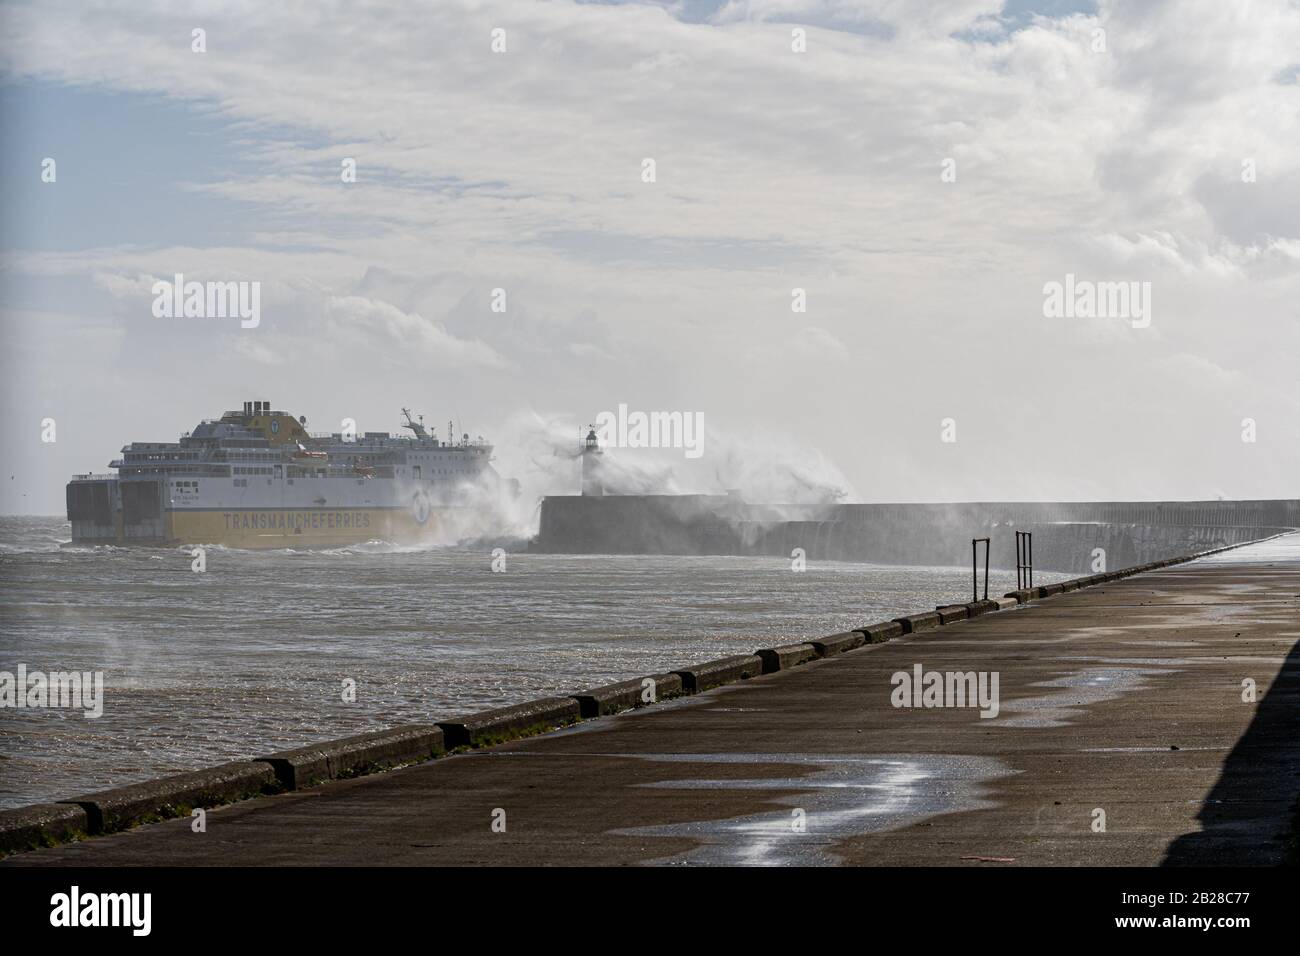 Eine Fähre, die Newhaven während des Sturms Jorge verlässt, die am 29. Februar 2020 Windböen und starken Regen nach England brachte. Stockfoto